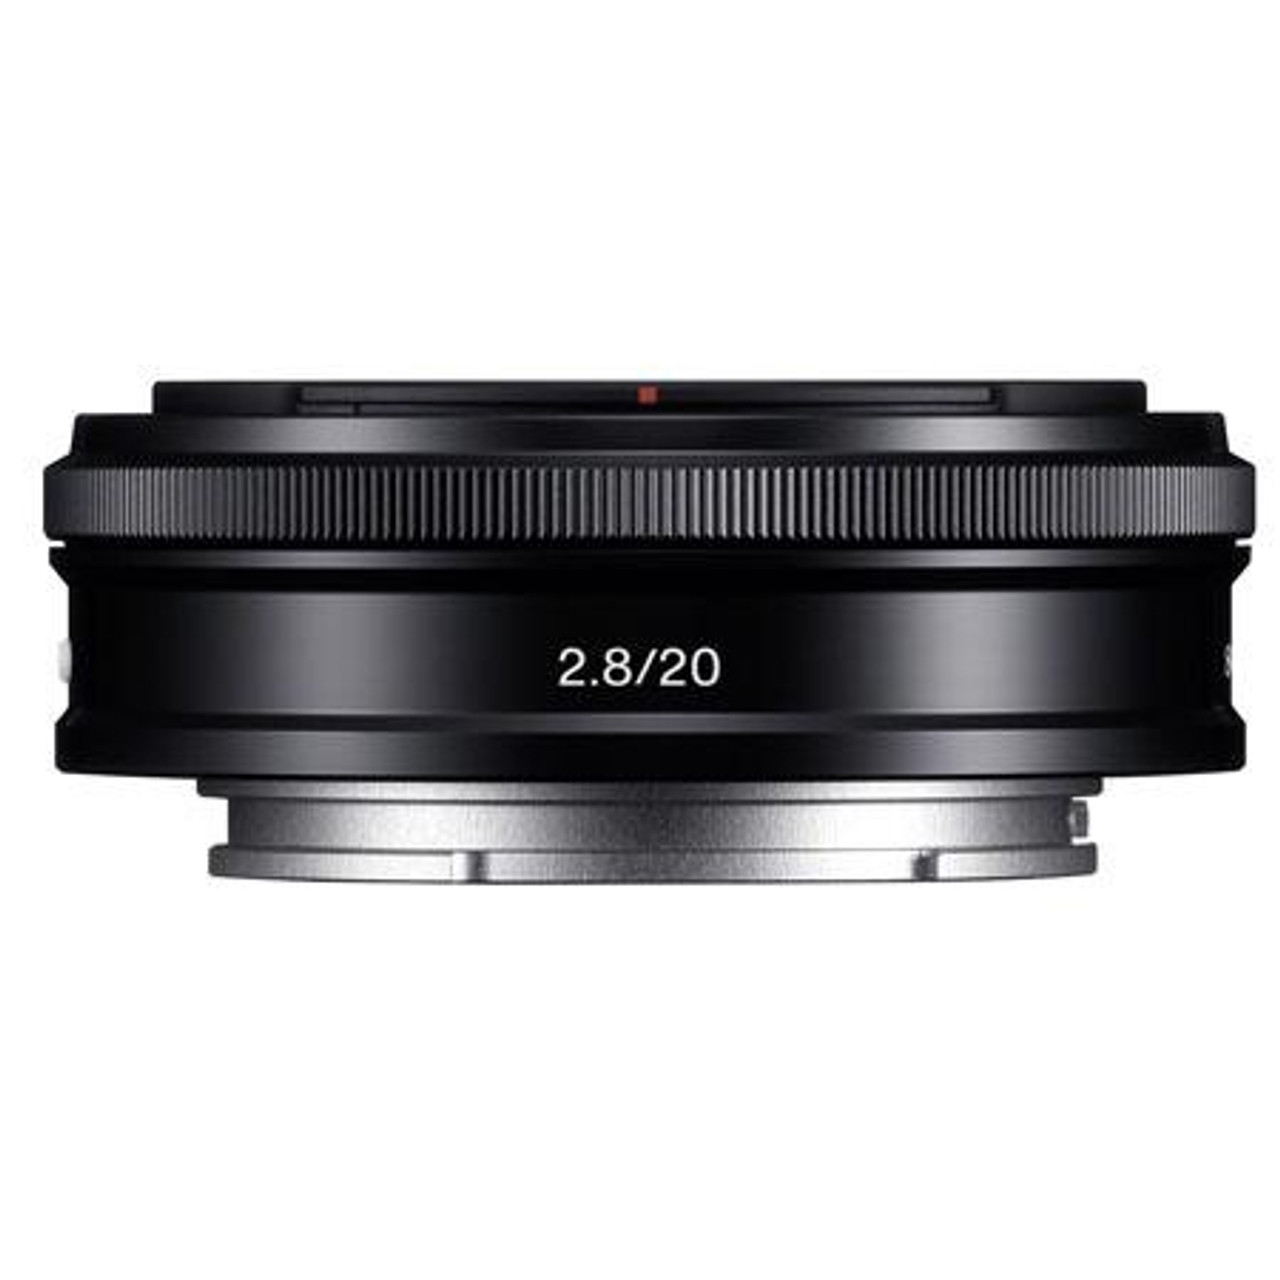 Sony 20mm F2.8 Alpha E-mount NEX Camera Lens, Black